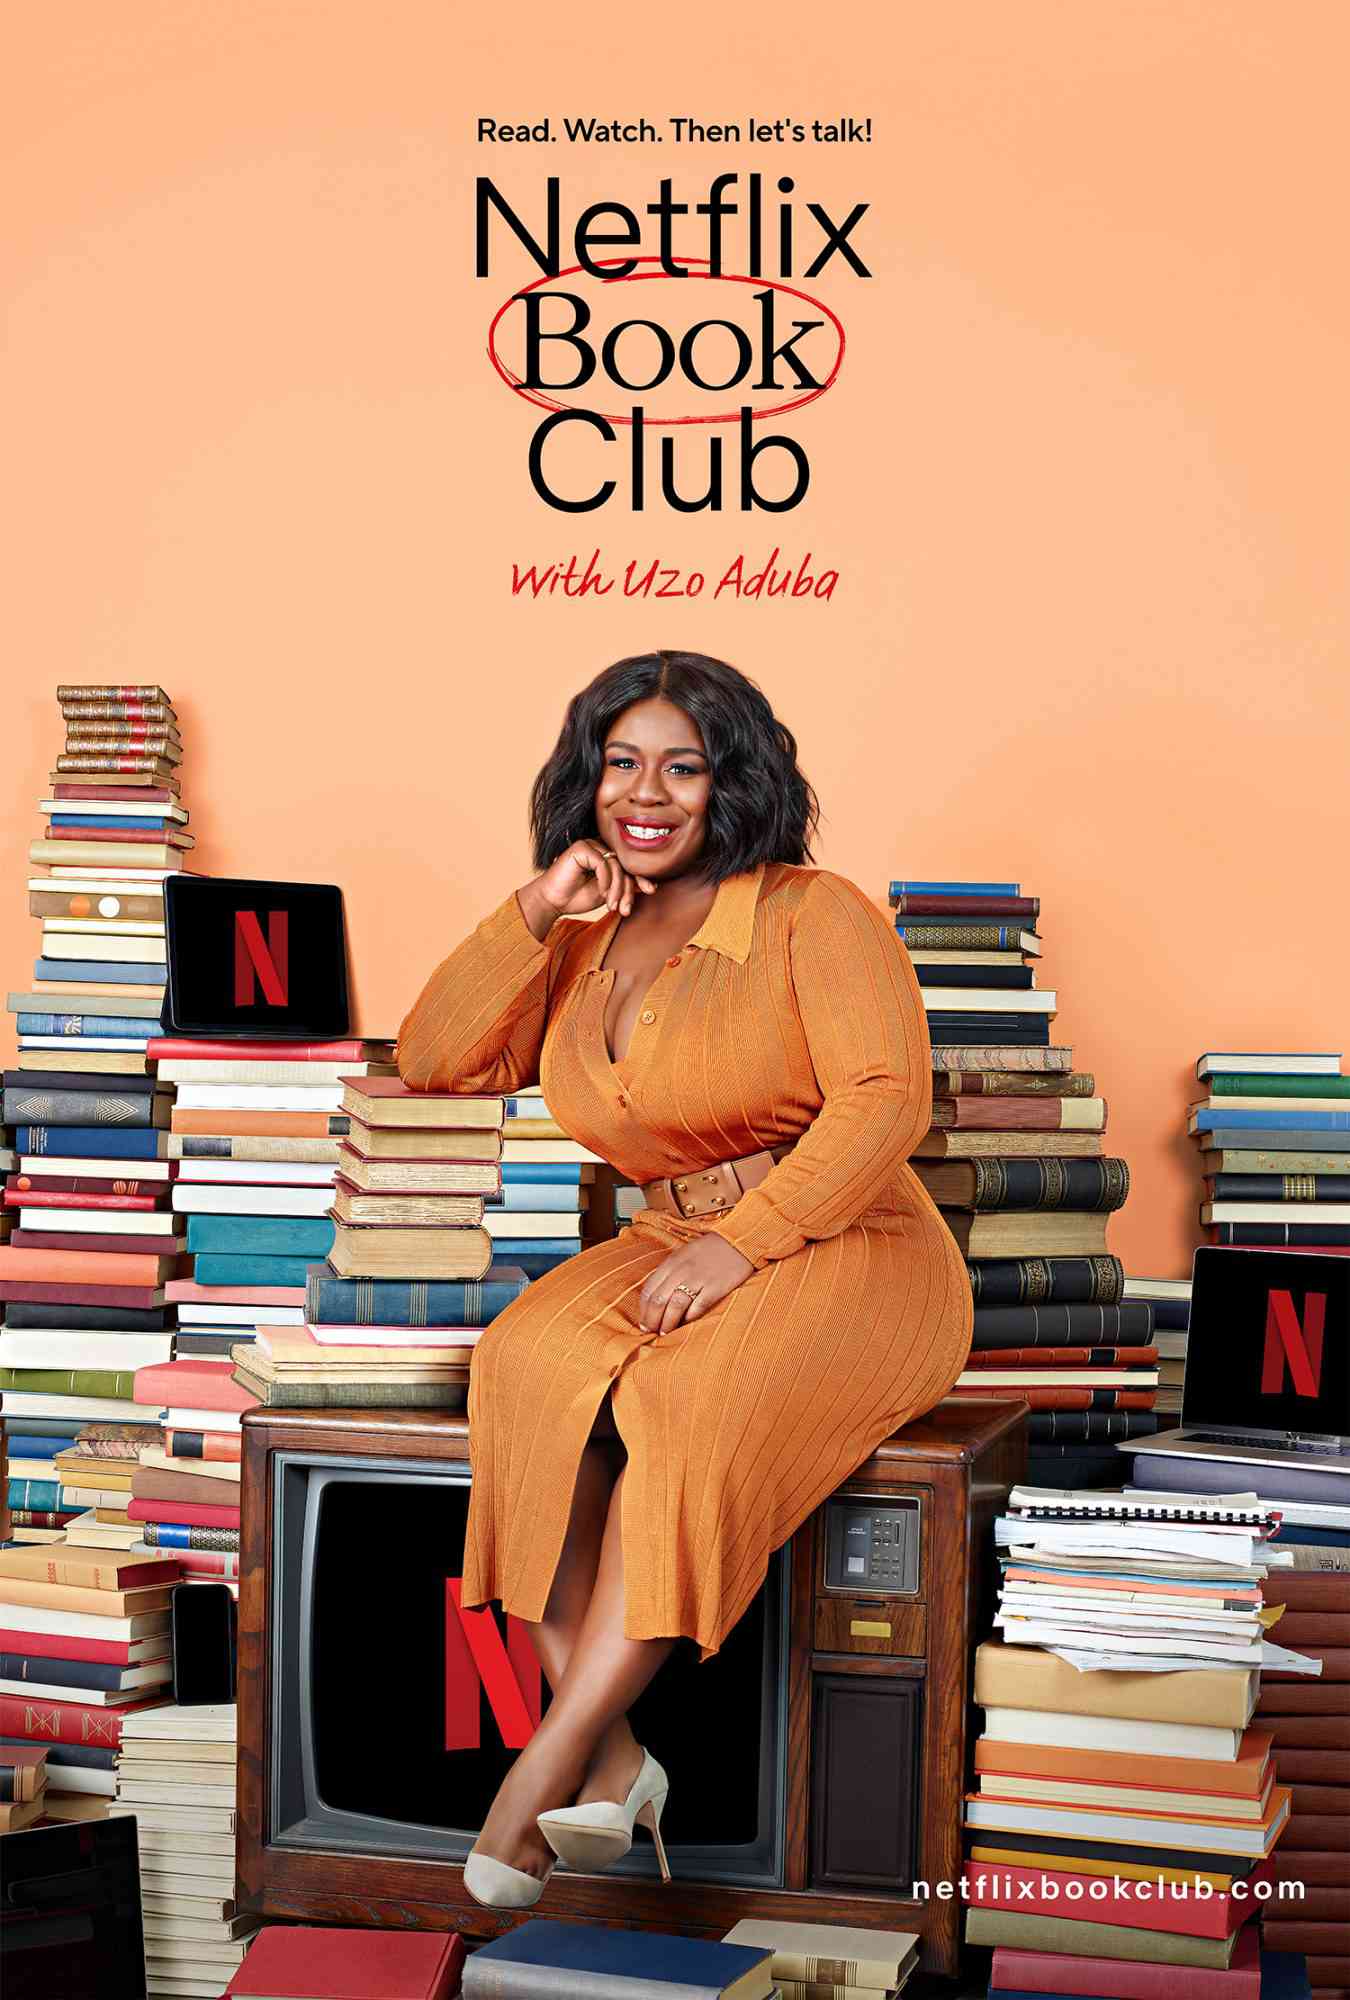 Netflix annonce un club de lecture pour ses prochaines adaptations d'écran hébergées par Uzo Aduba